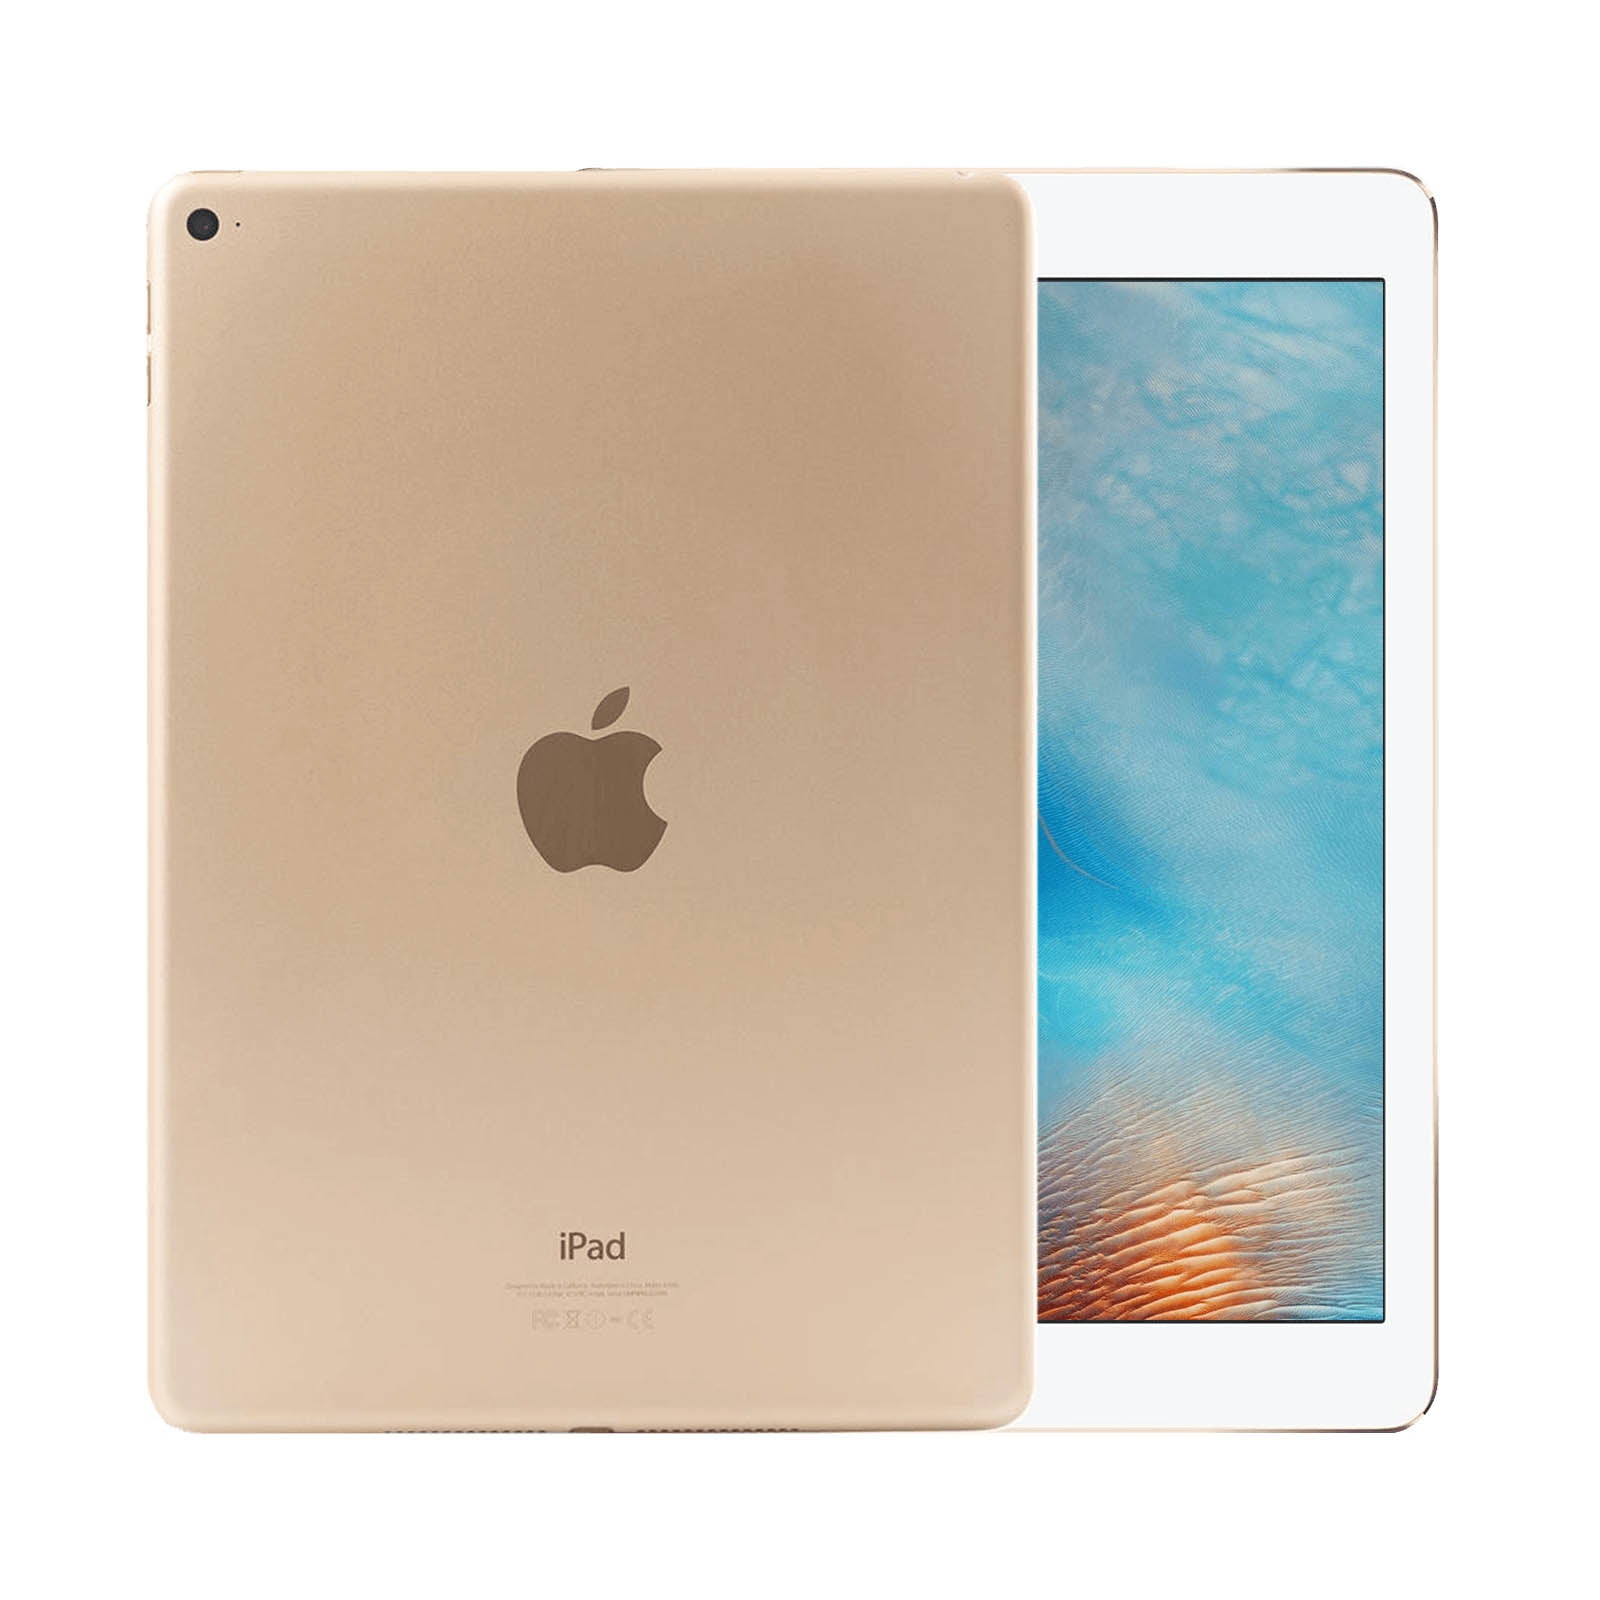 Apple iPad Air 2 16GB Gold Fair - WiFi